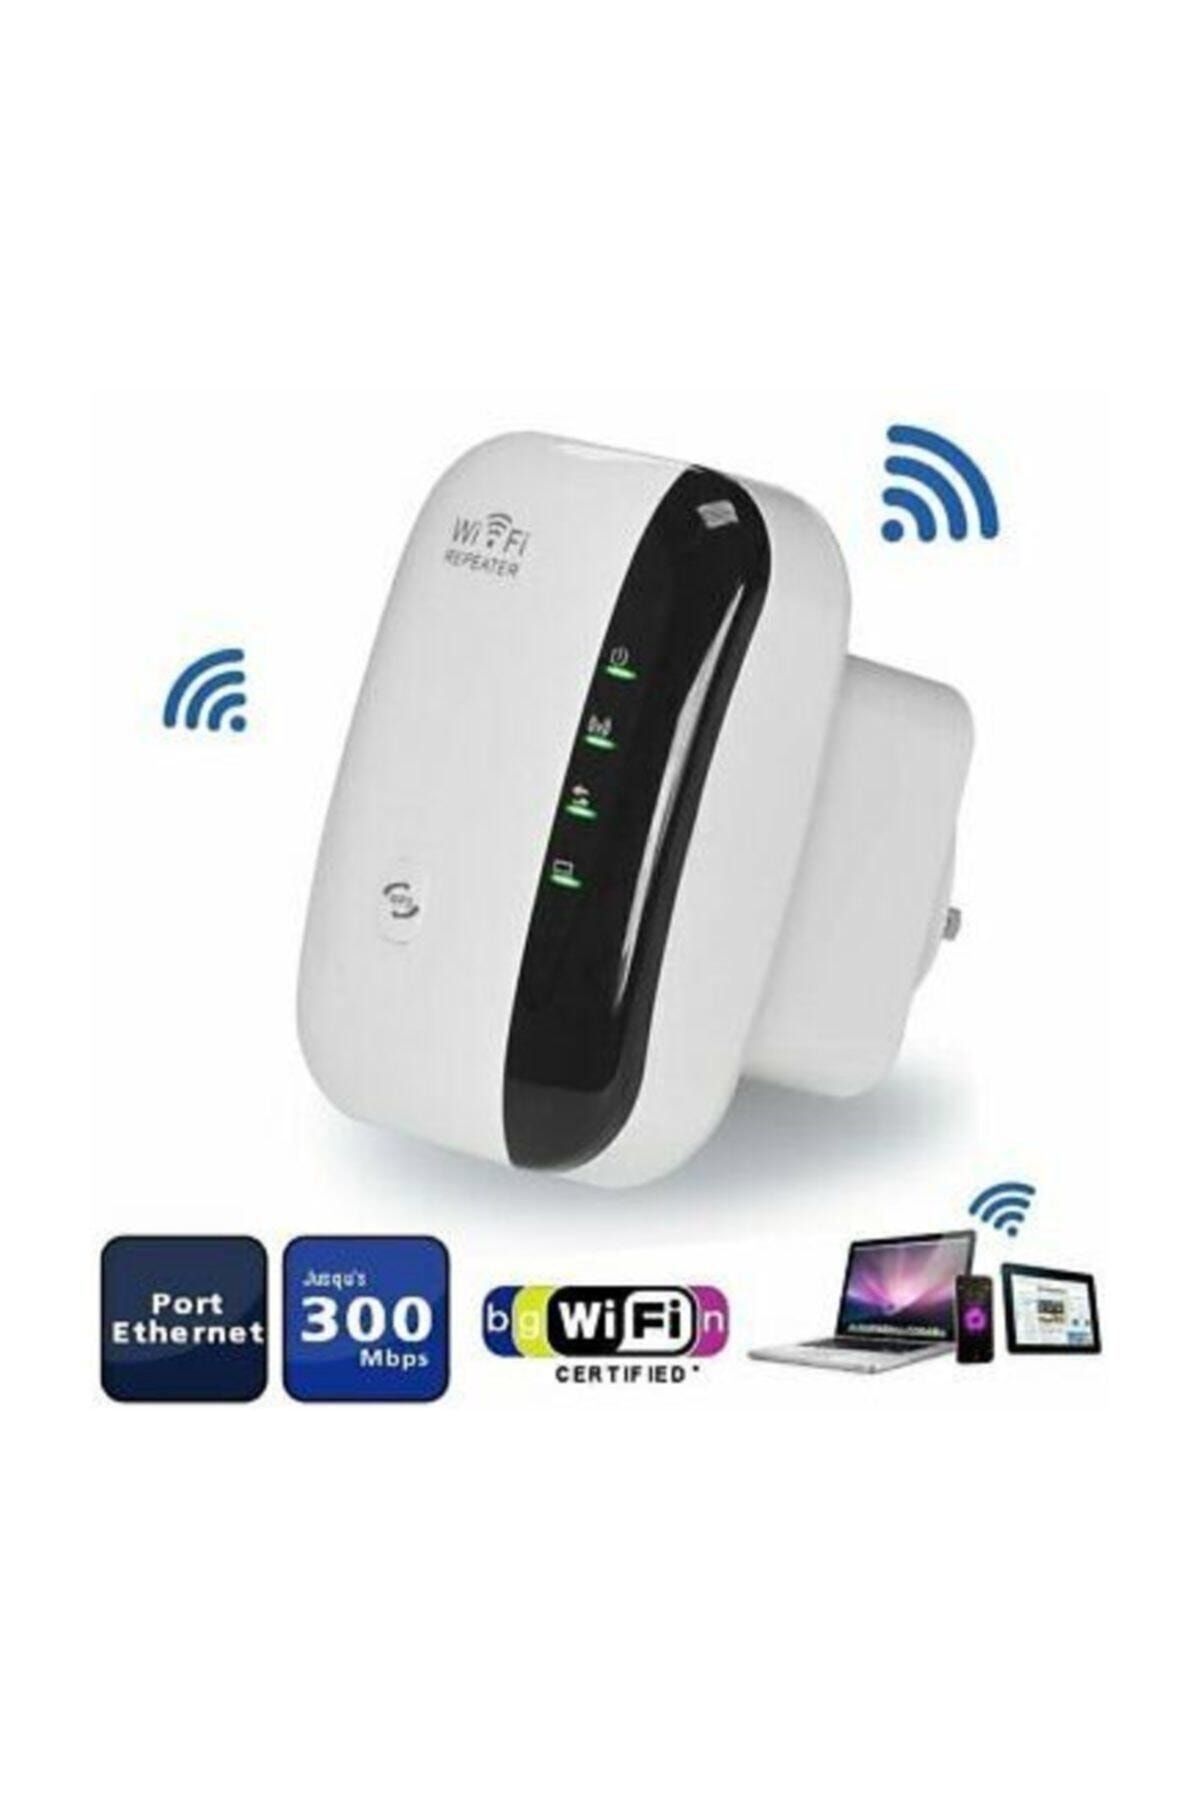 EPC Wifi Repeater Kablosuz Sinyal Güçlendirici(YENİ ÇİP) Access Point 300mbps Türkçe Kurulum Klavuzu